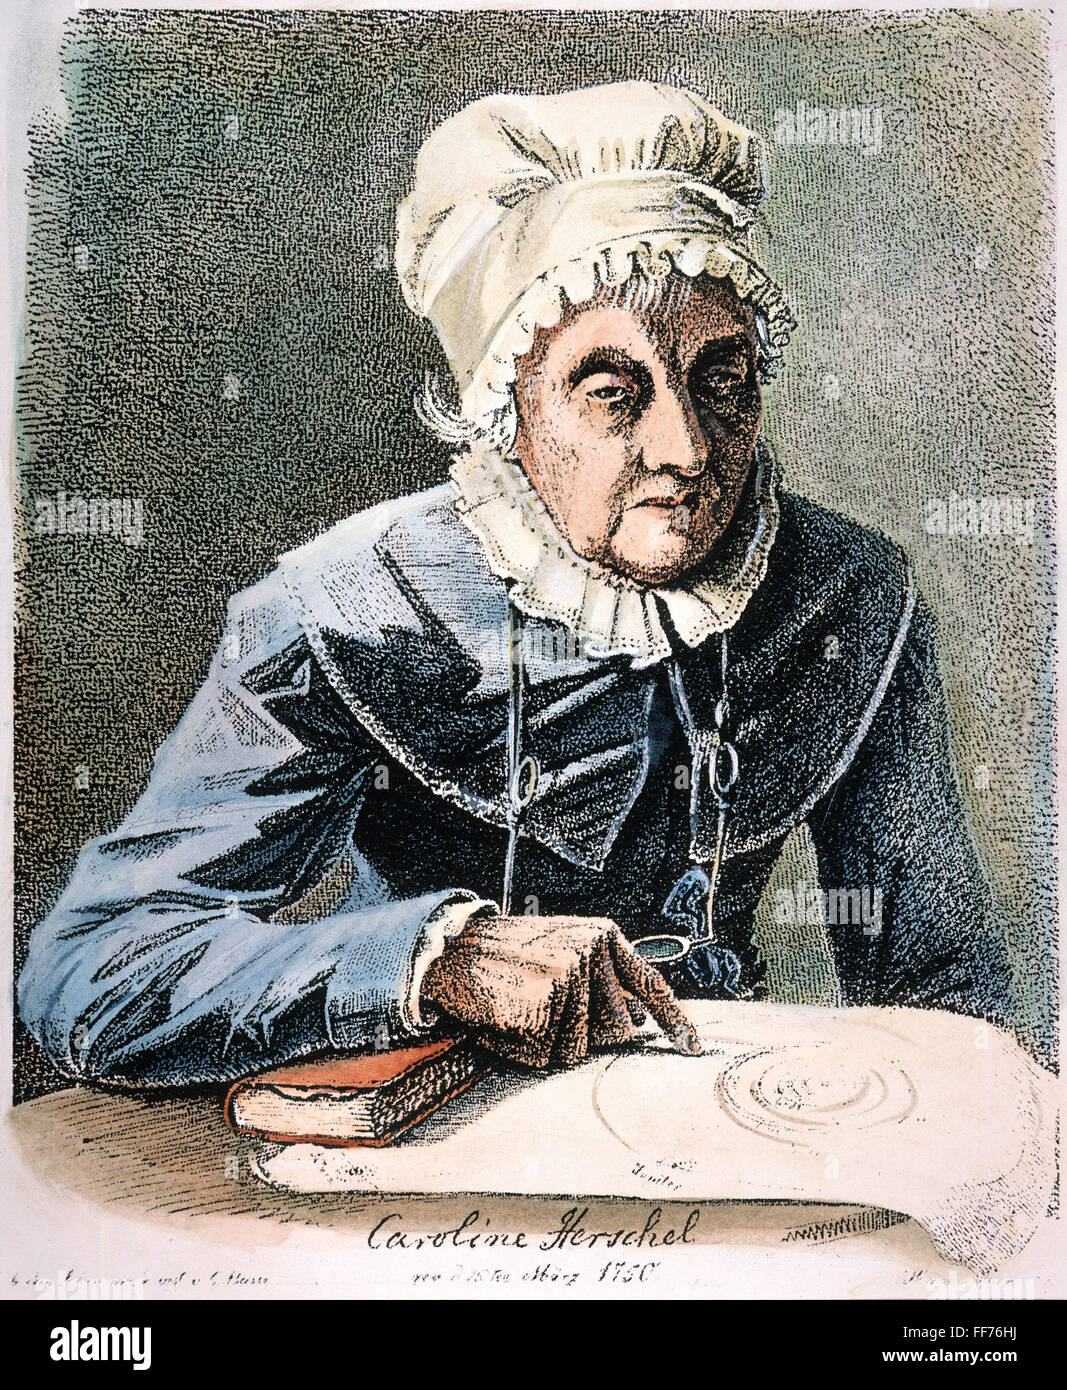 CAROLINE L. /HERSCHEL n(1750-1848). (Britannique), d'origine allemande, astronome. L'eau-forte, 1847, par Georg Heinrich Busse. Banque D'Images